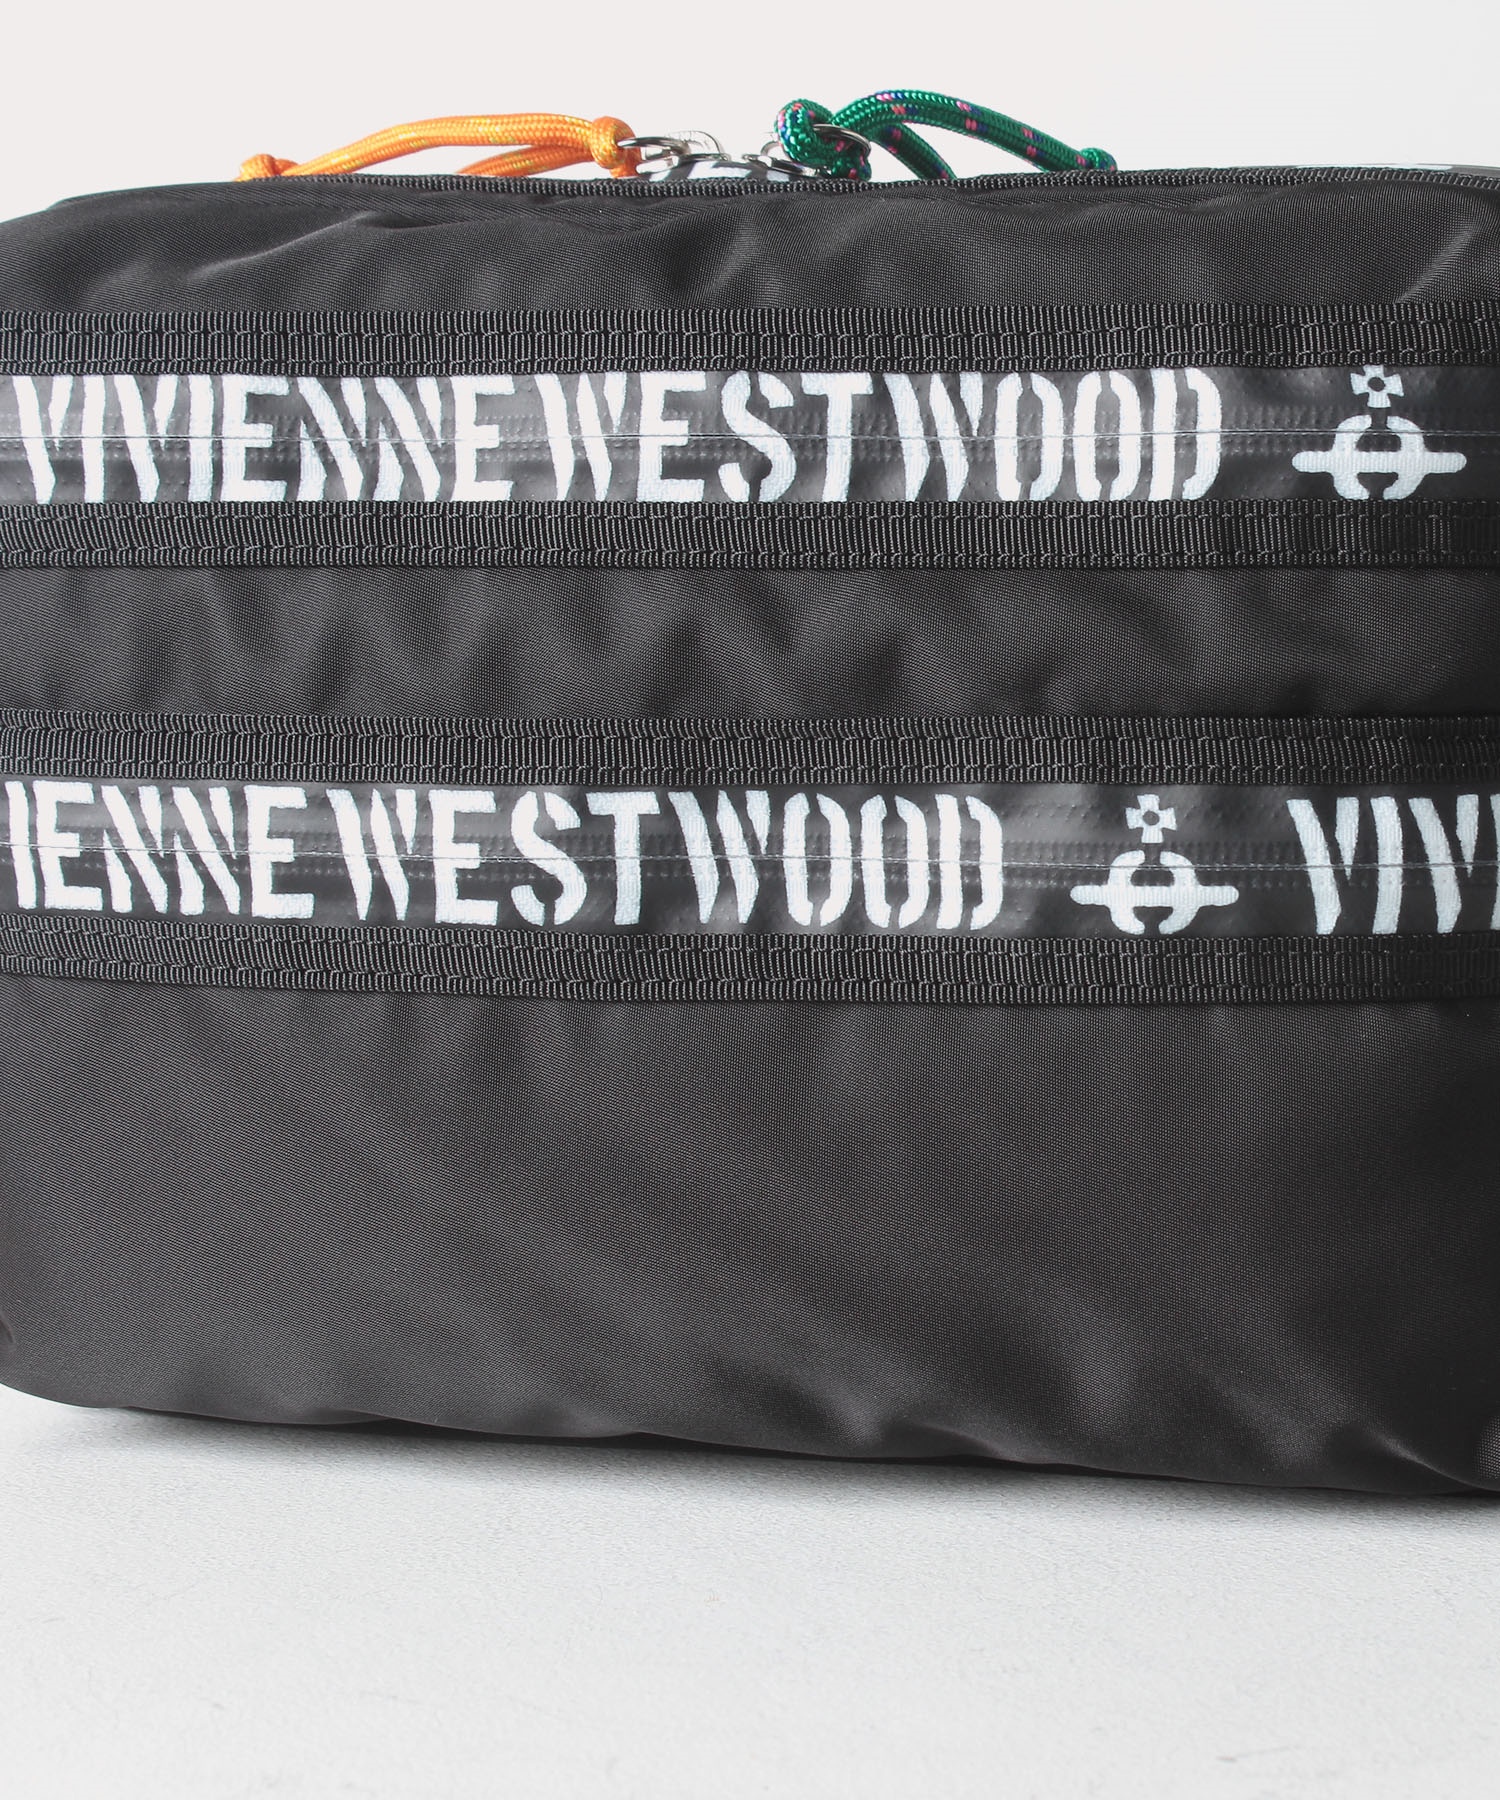 ヒロープ メンズショルダーバッグ ブラック メンズ Vwb930 公式通販 ヴィヴィアン ウエストウッド Vivienne Westwood